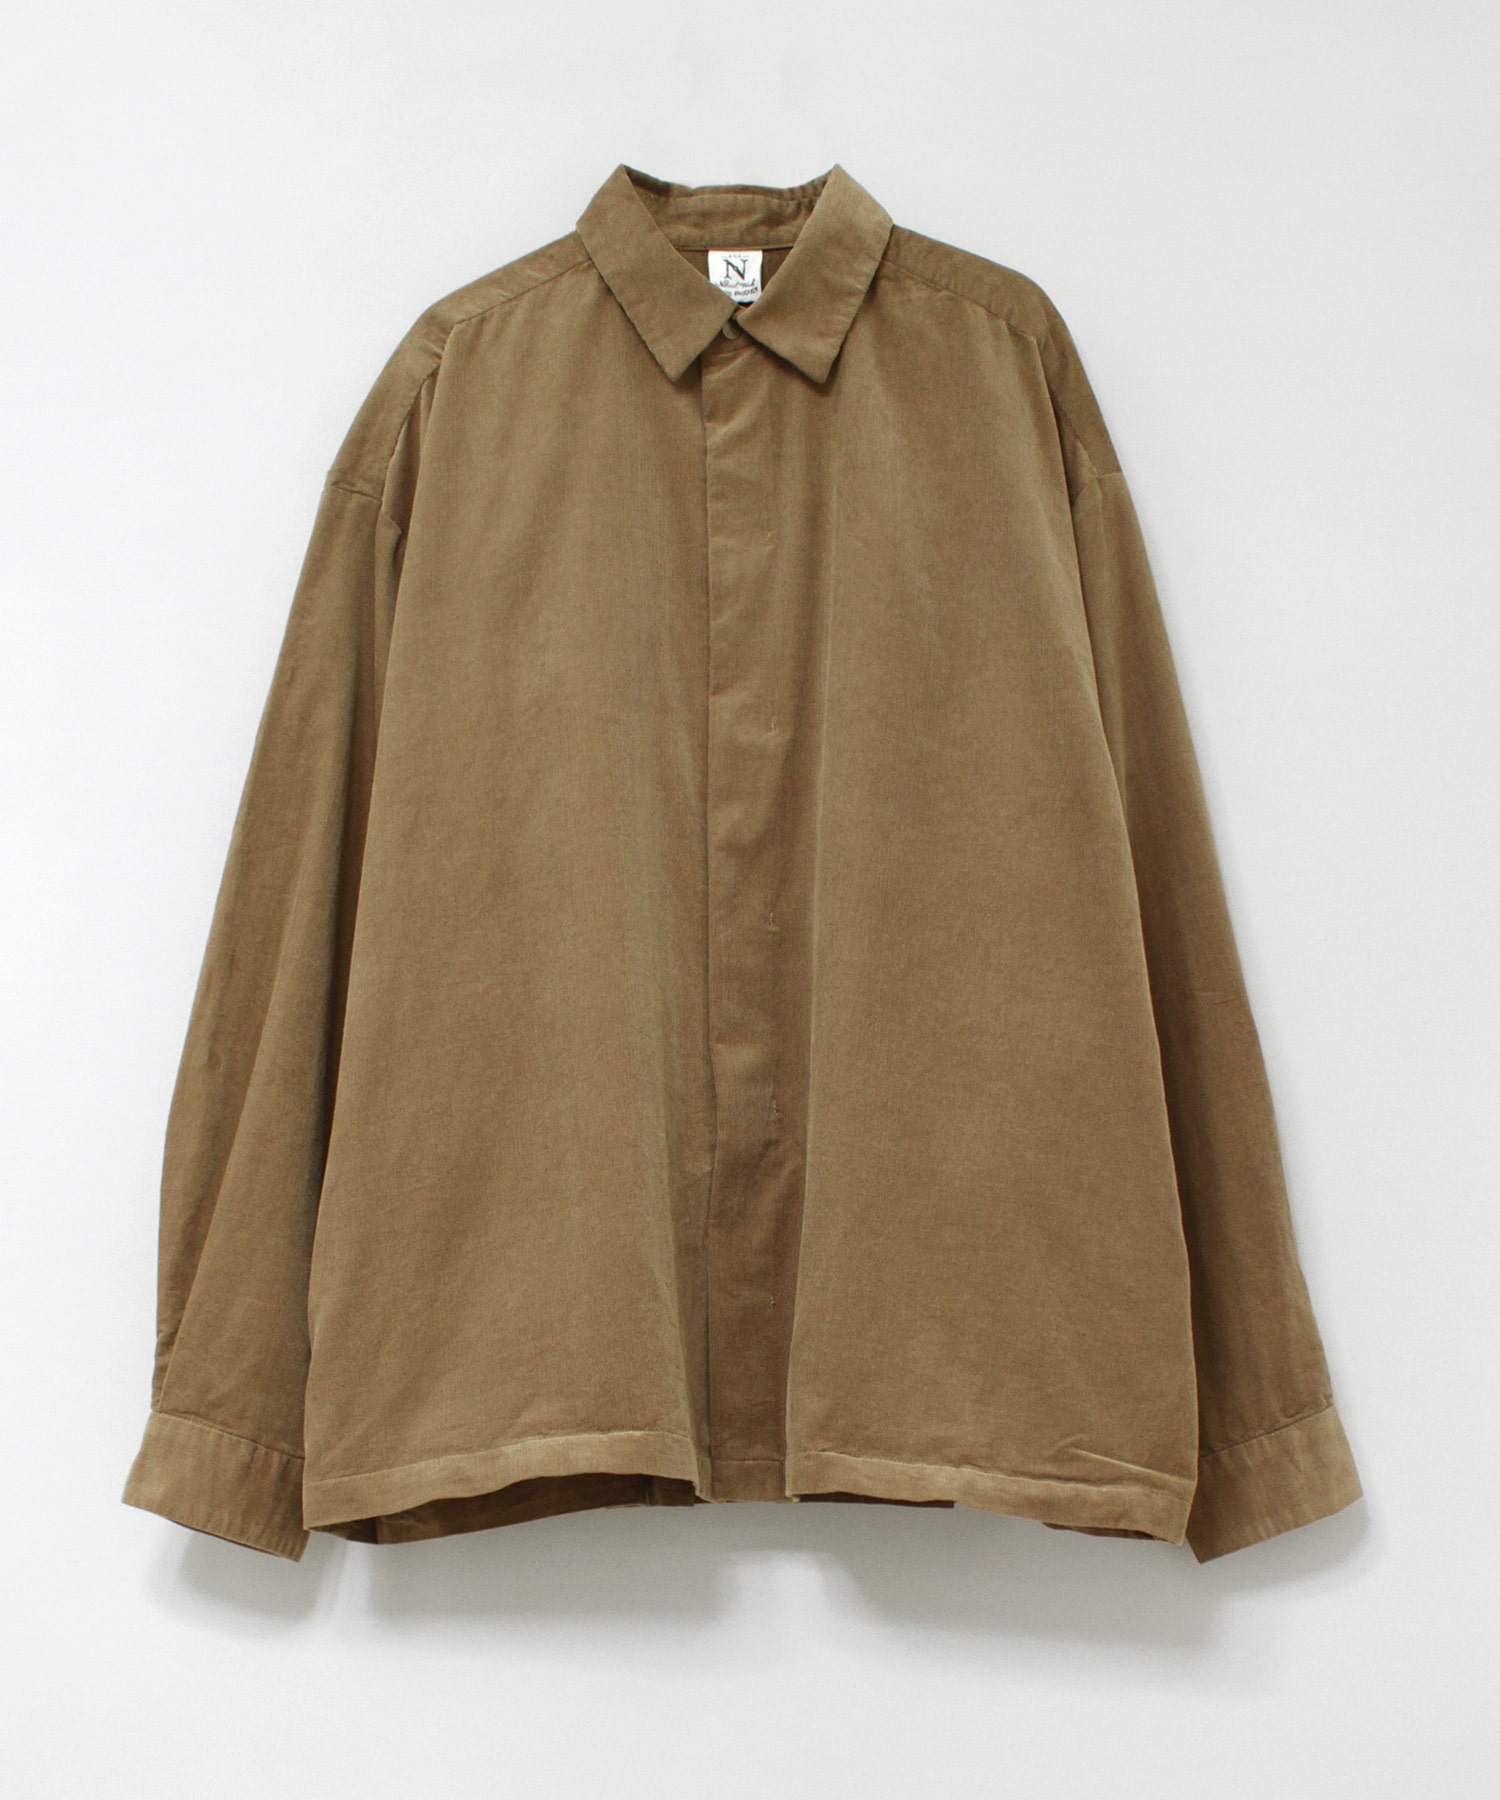 B2790 シャツコールシャツジャケット